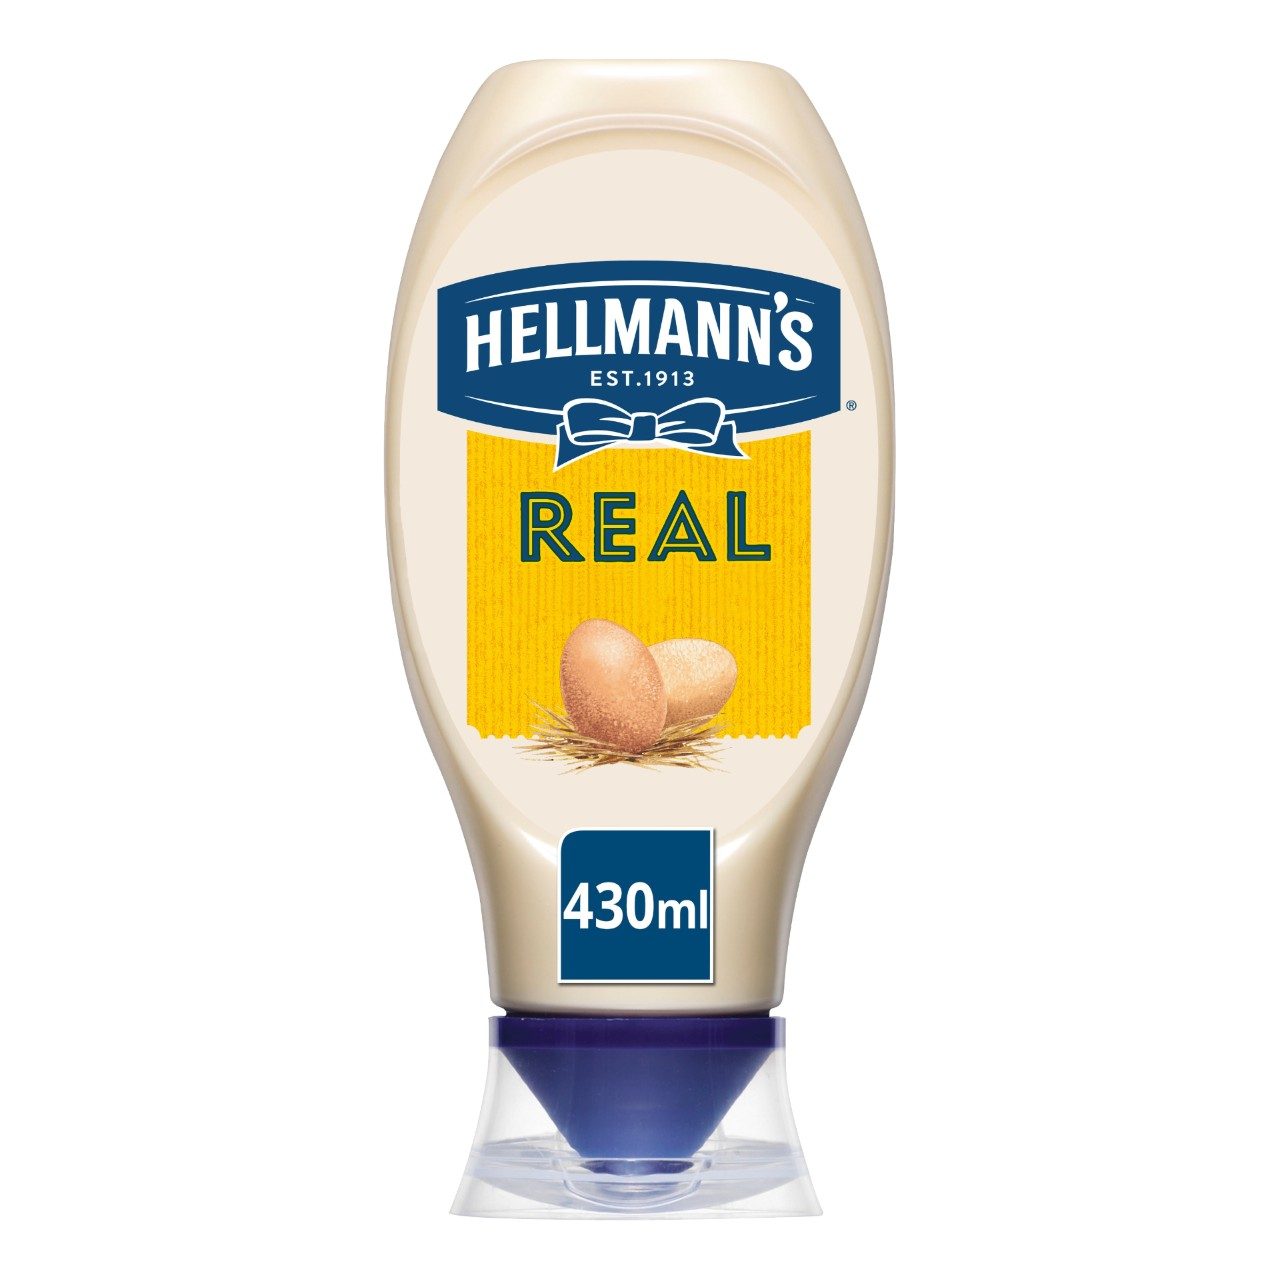 Real mayonaise